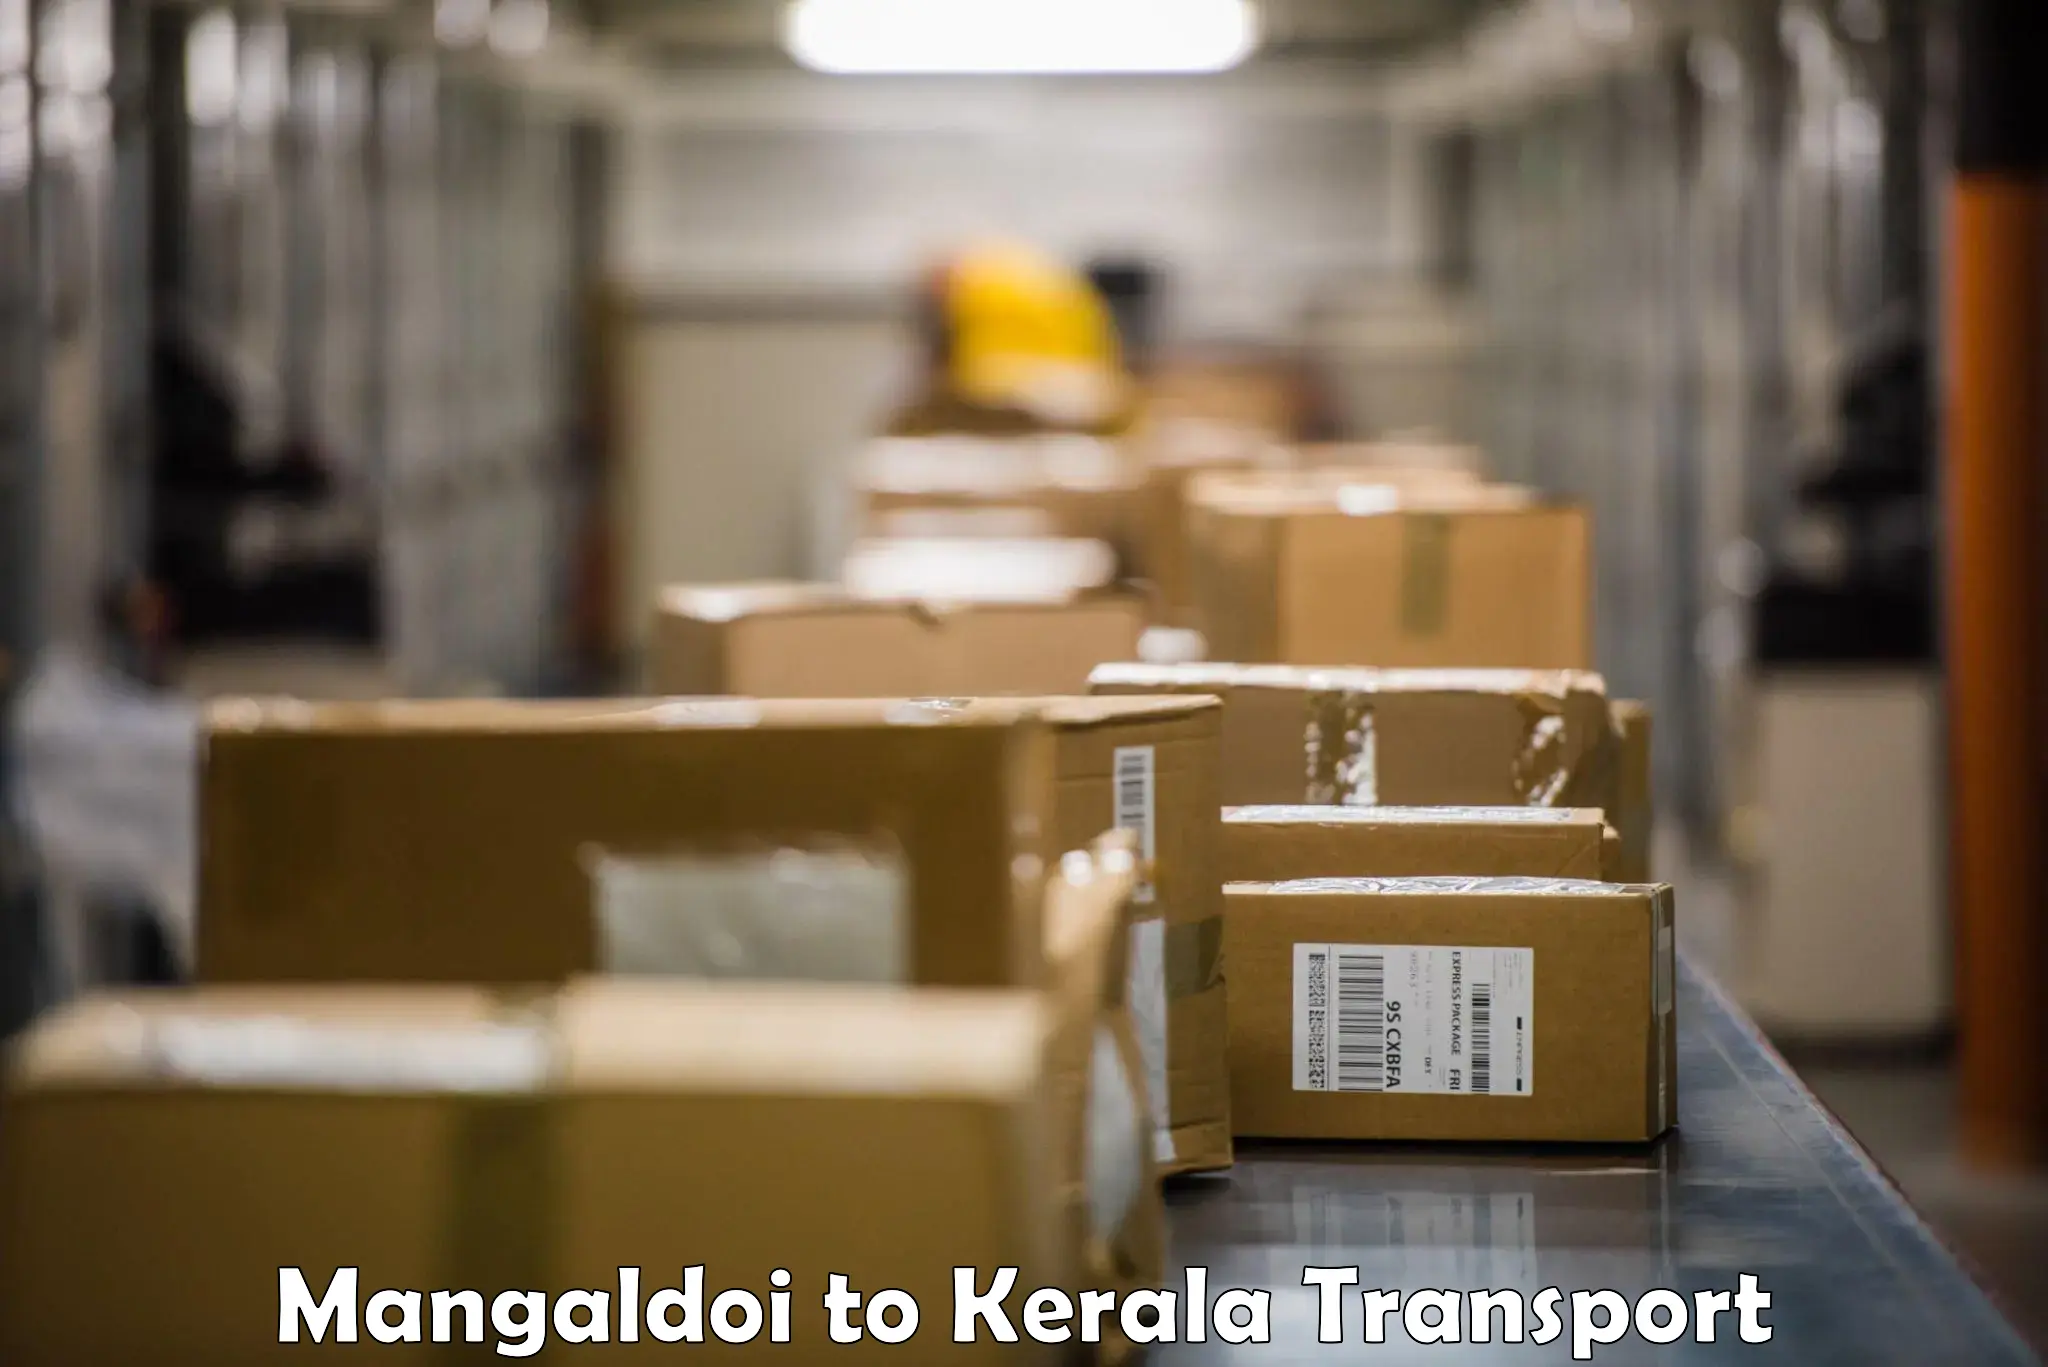 Transport services Mangaldoi to Kakkur